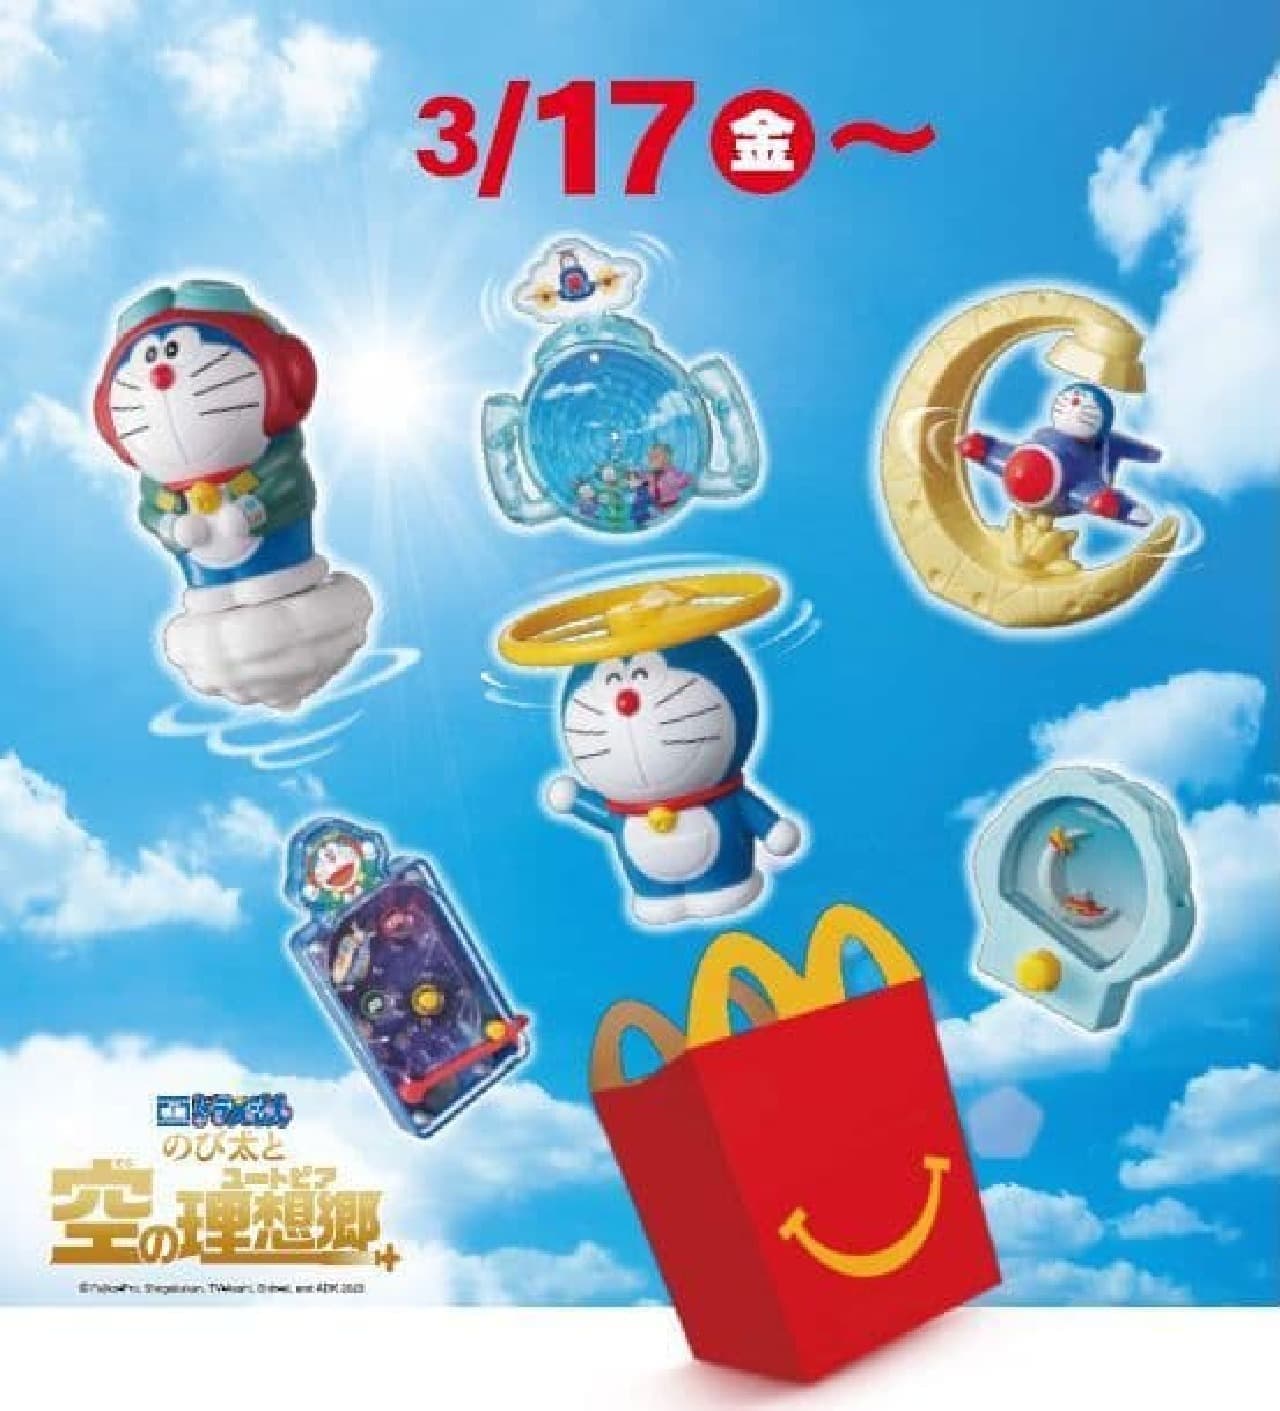 McDonald's Happy Set "Doraemon